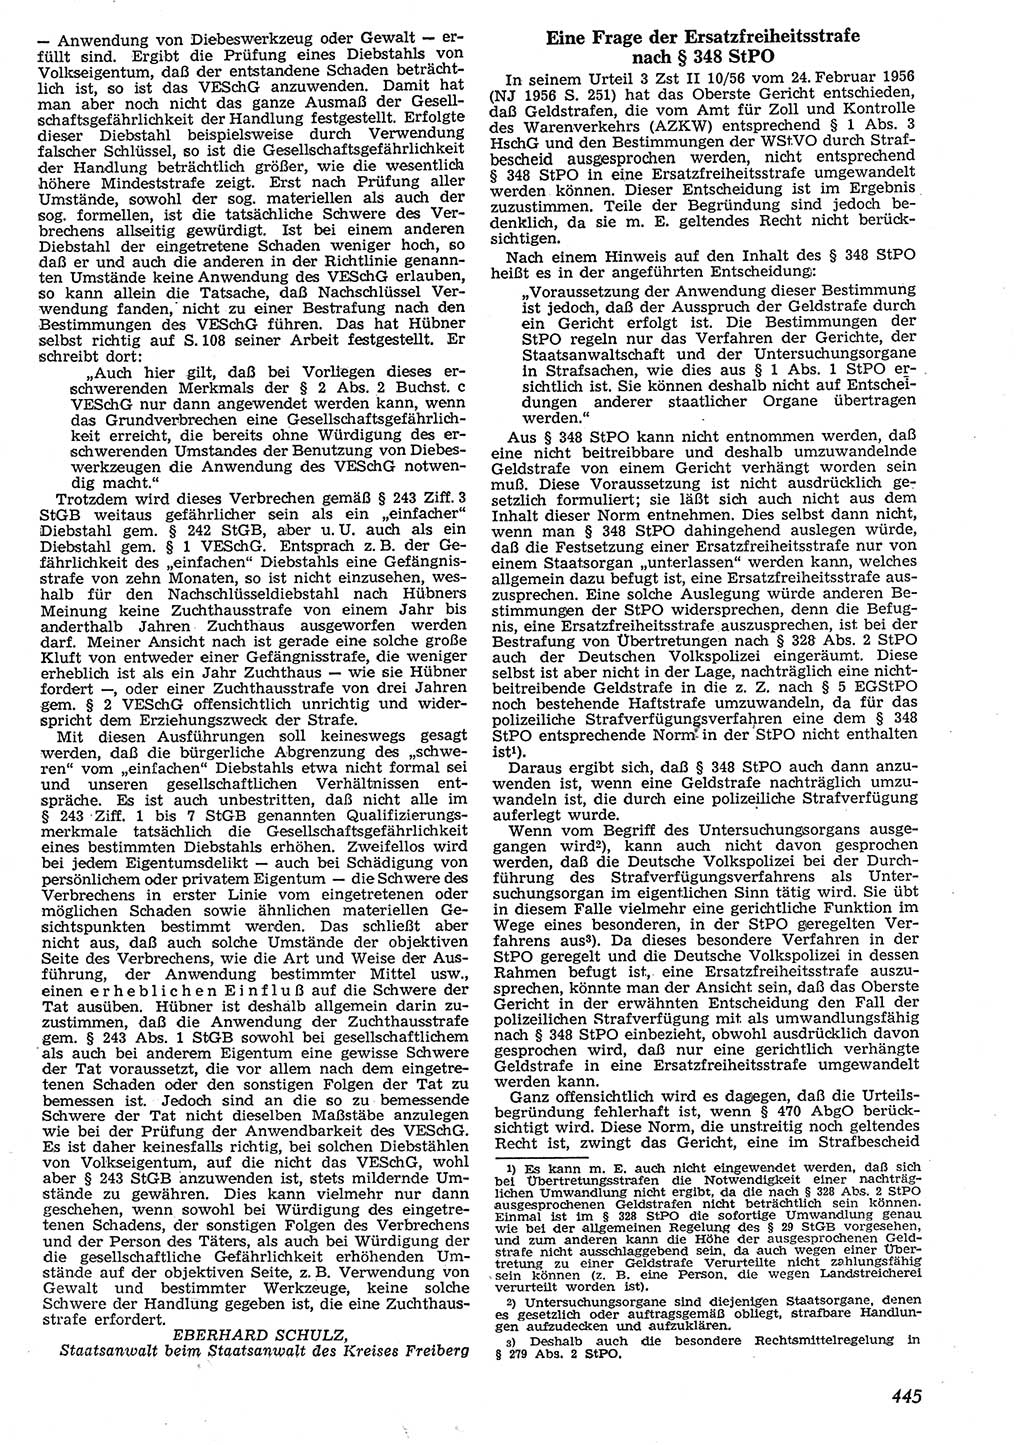 Neue Justiz (NJ), Zeitschrift für Recht und Rechtswissenschaft [Deutsche Demokratische Republik (DDR)], 10. Jahrgang 1956, Seite 445 (NJ DDR 1956, S. 445)